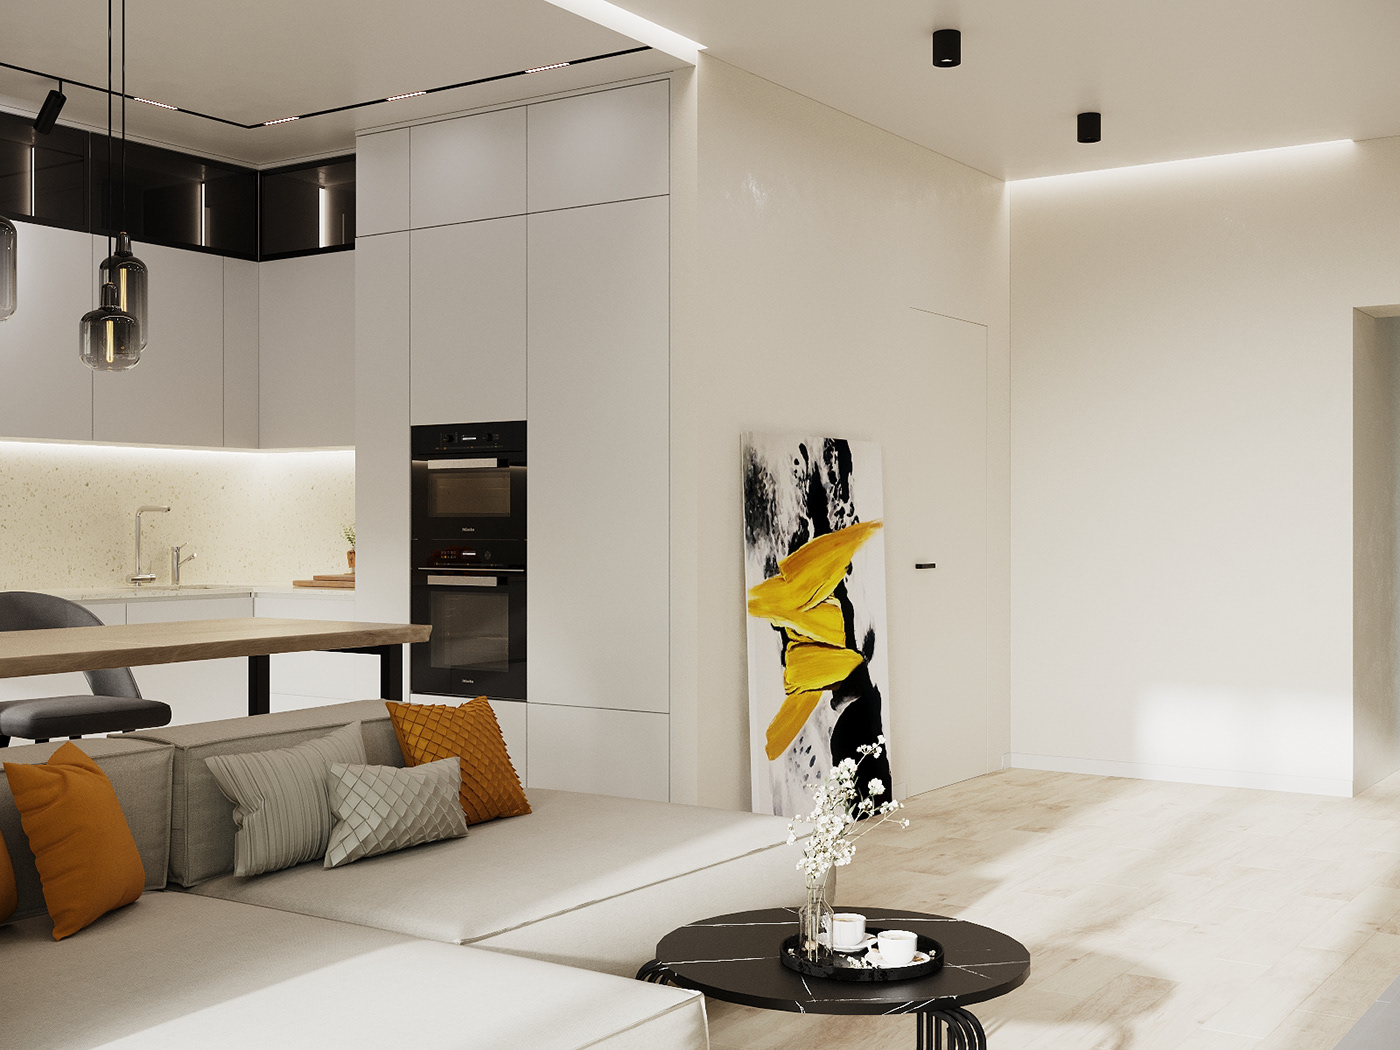 3D architecture design Interior minimal modern Render visualization